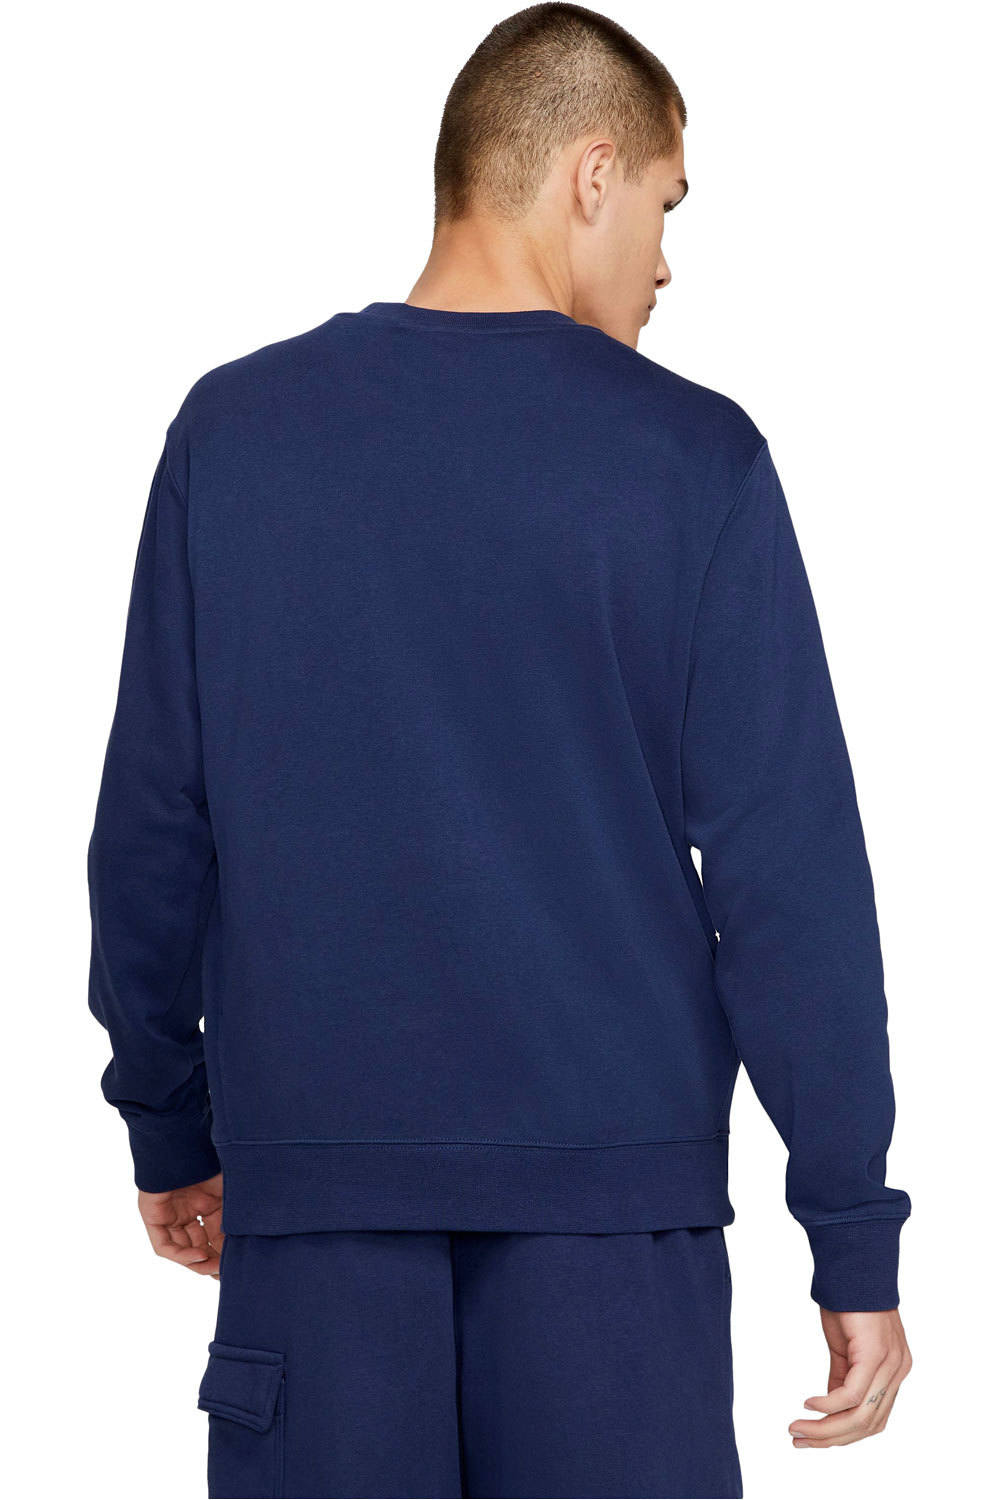 Comprar en oferta Nike Sportswear Club Sweatshirt (BV2666) midnight navy